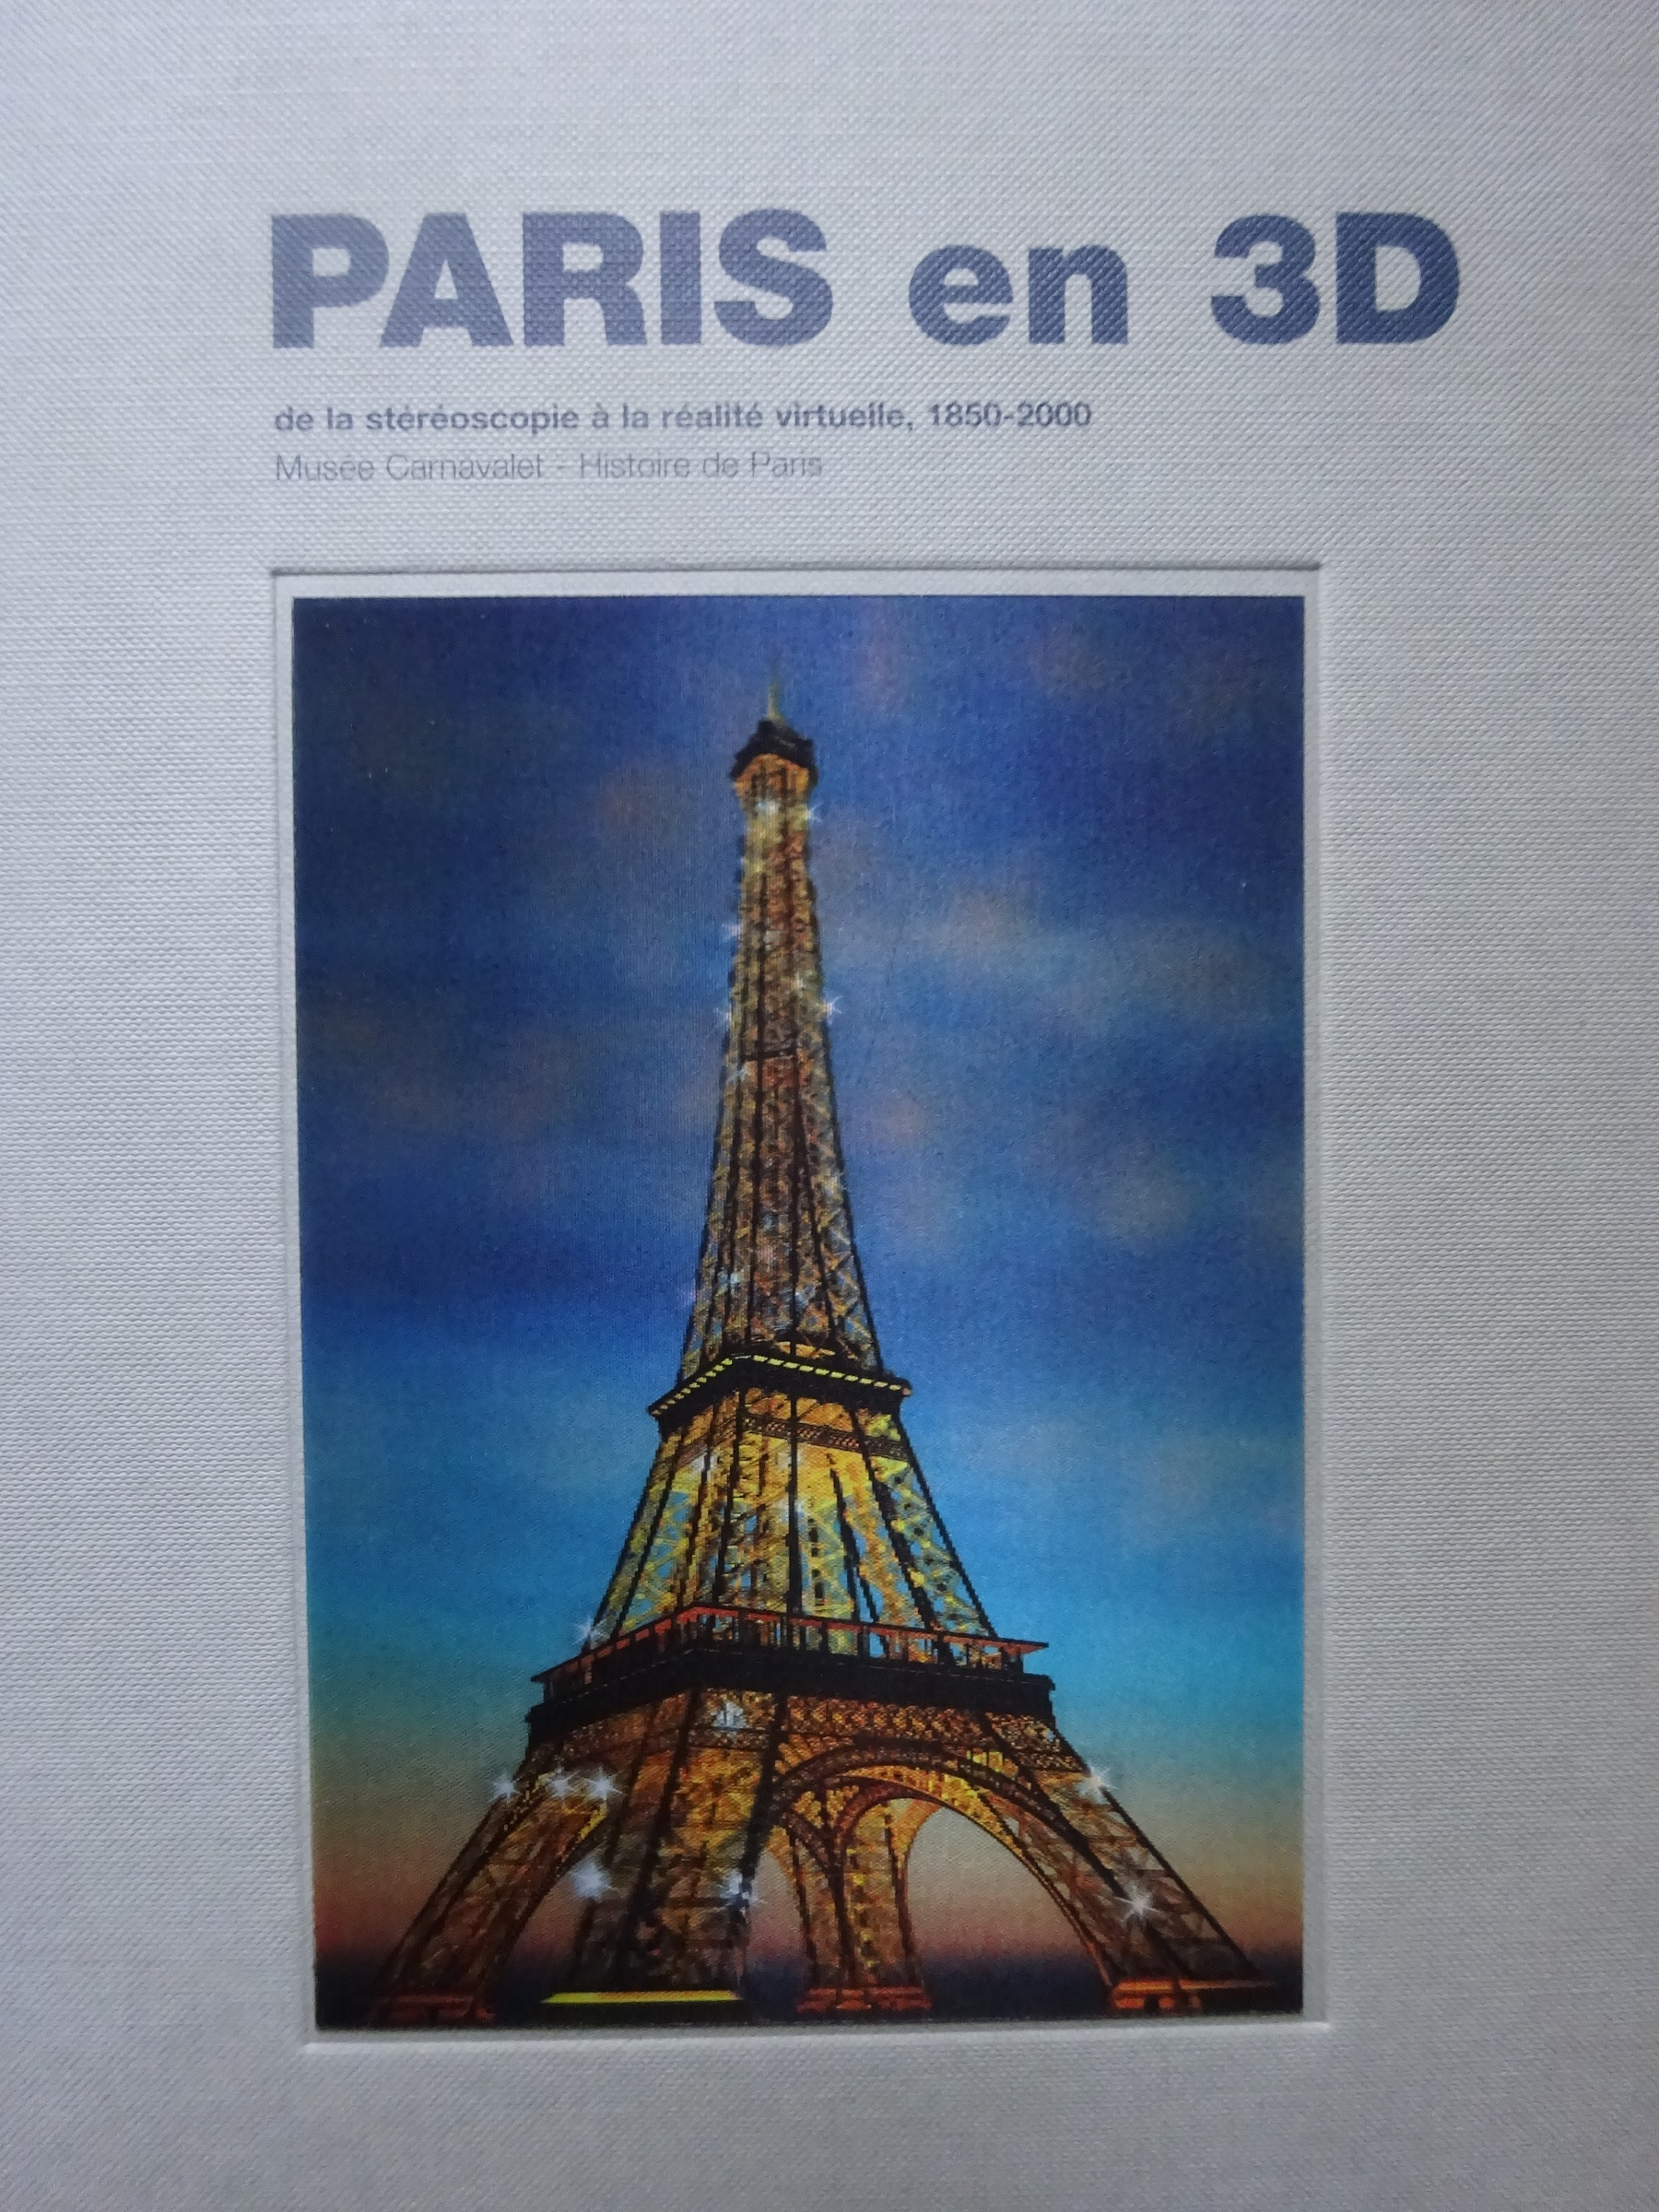 Paris en 3D. De la stéréoscopie à la réalité virtuelle, 1850-2000